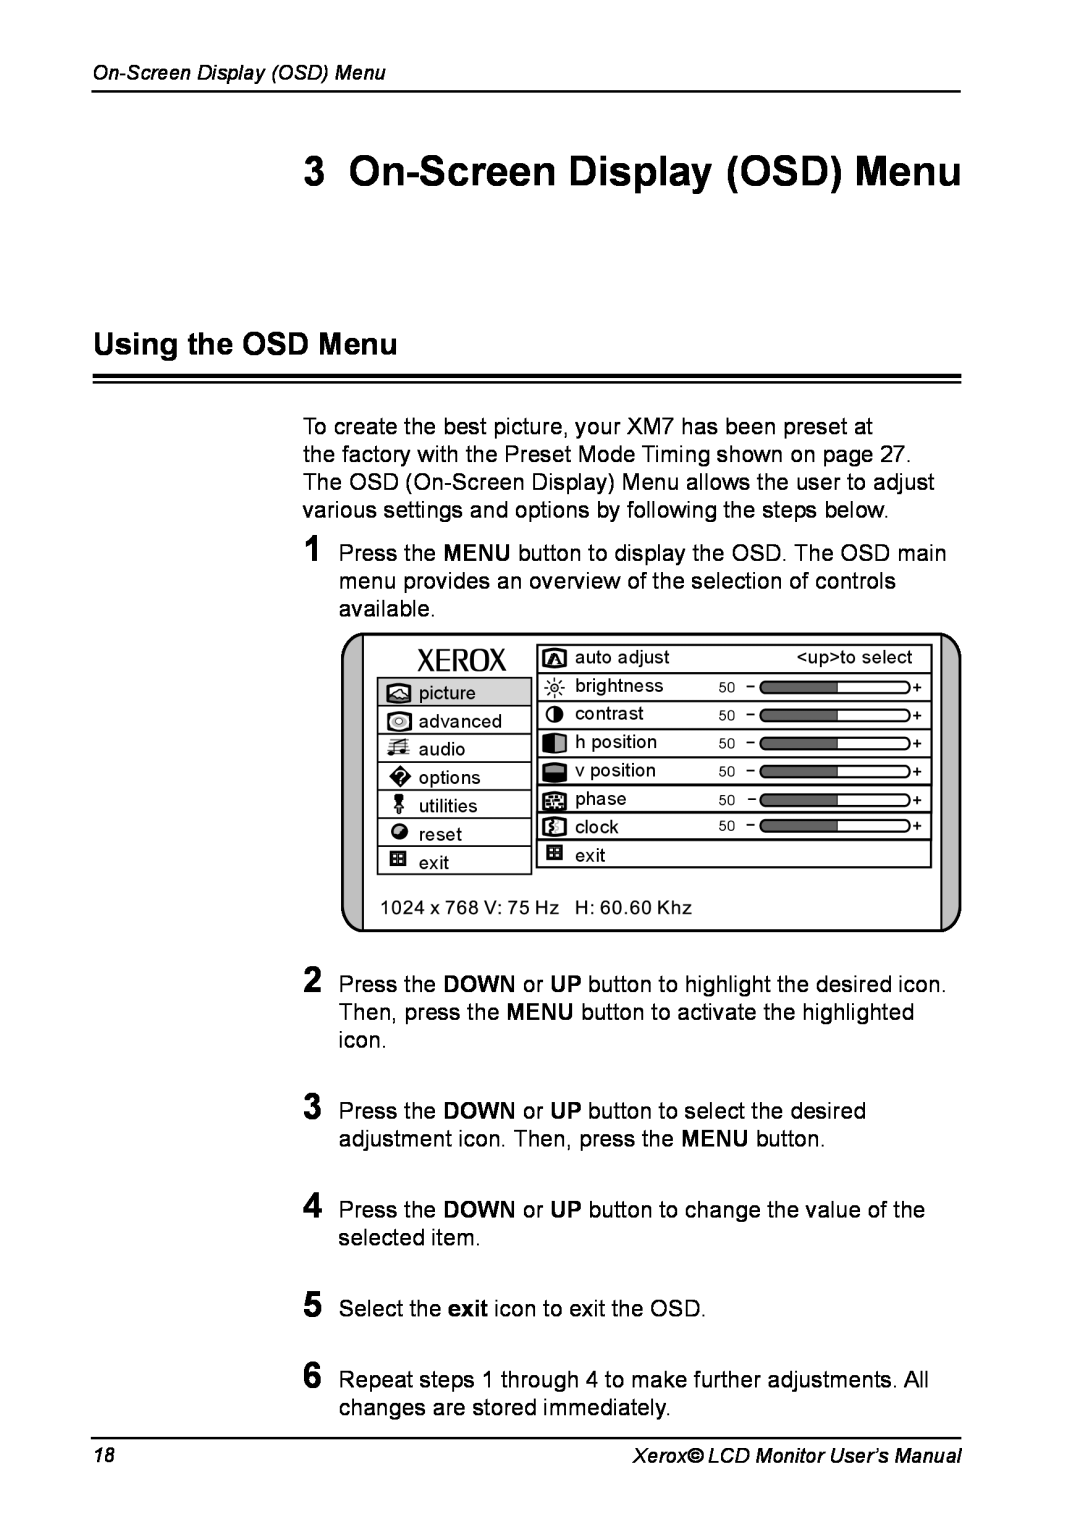 Xerox XM7-19w manual On-Screen Display OSD Menu, Using the OSD Menu 